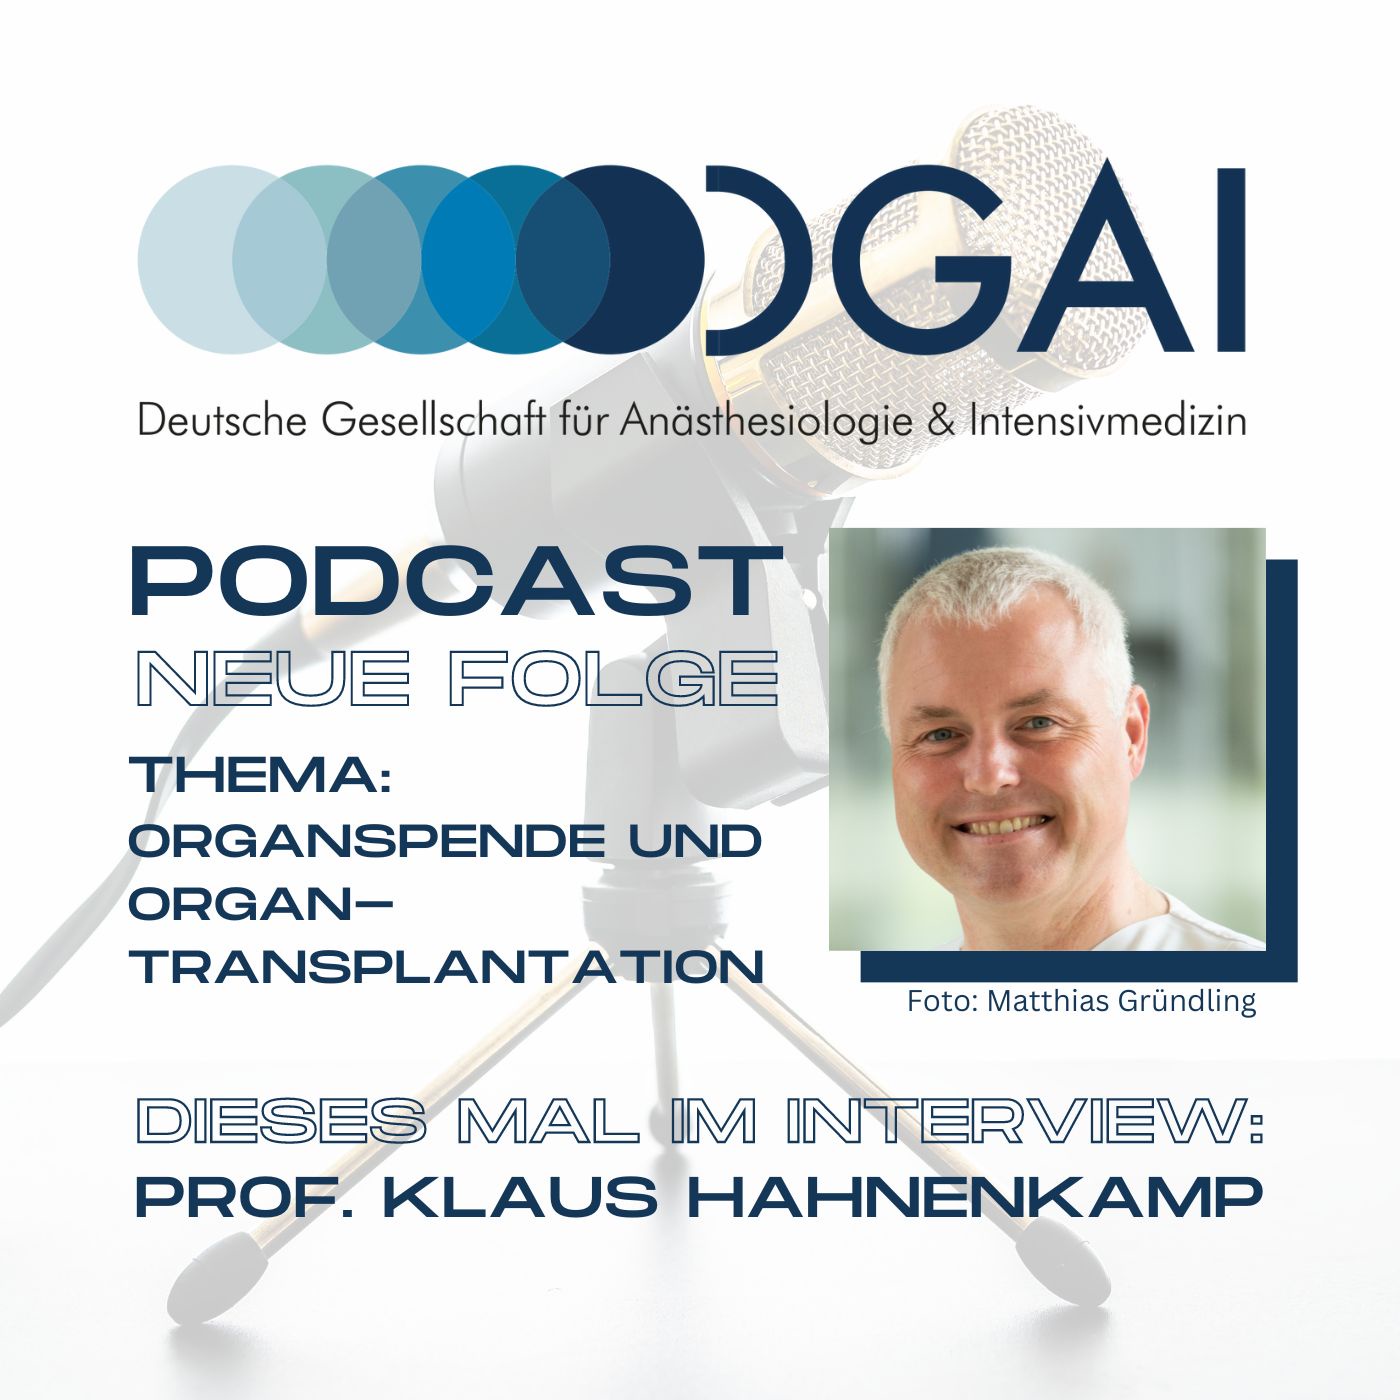 DGAI-Podcast: Interview mit Professor Klaus Hahnenkamp zum Thema Organspende und -transplantation